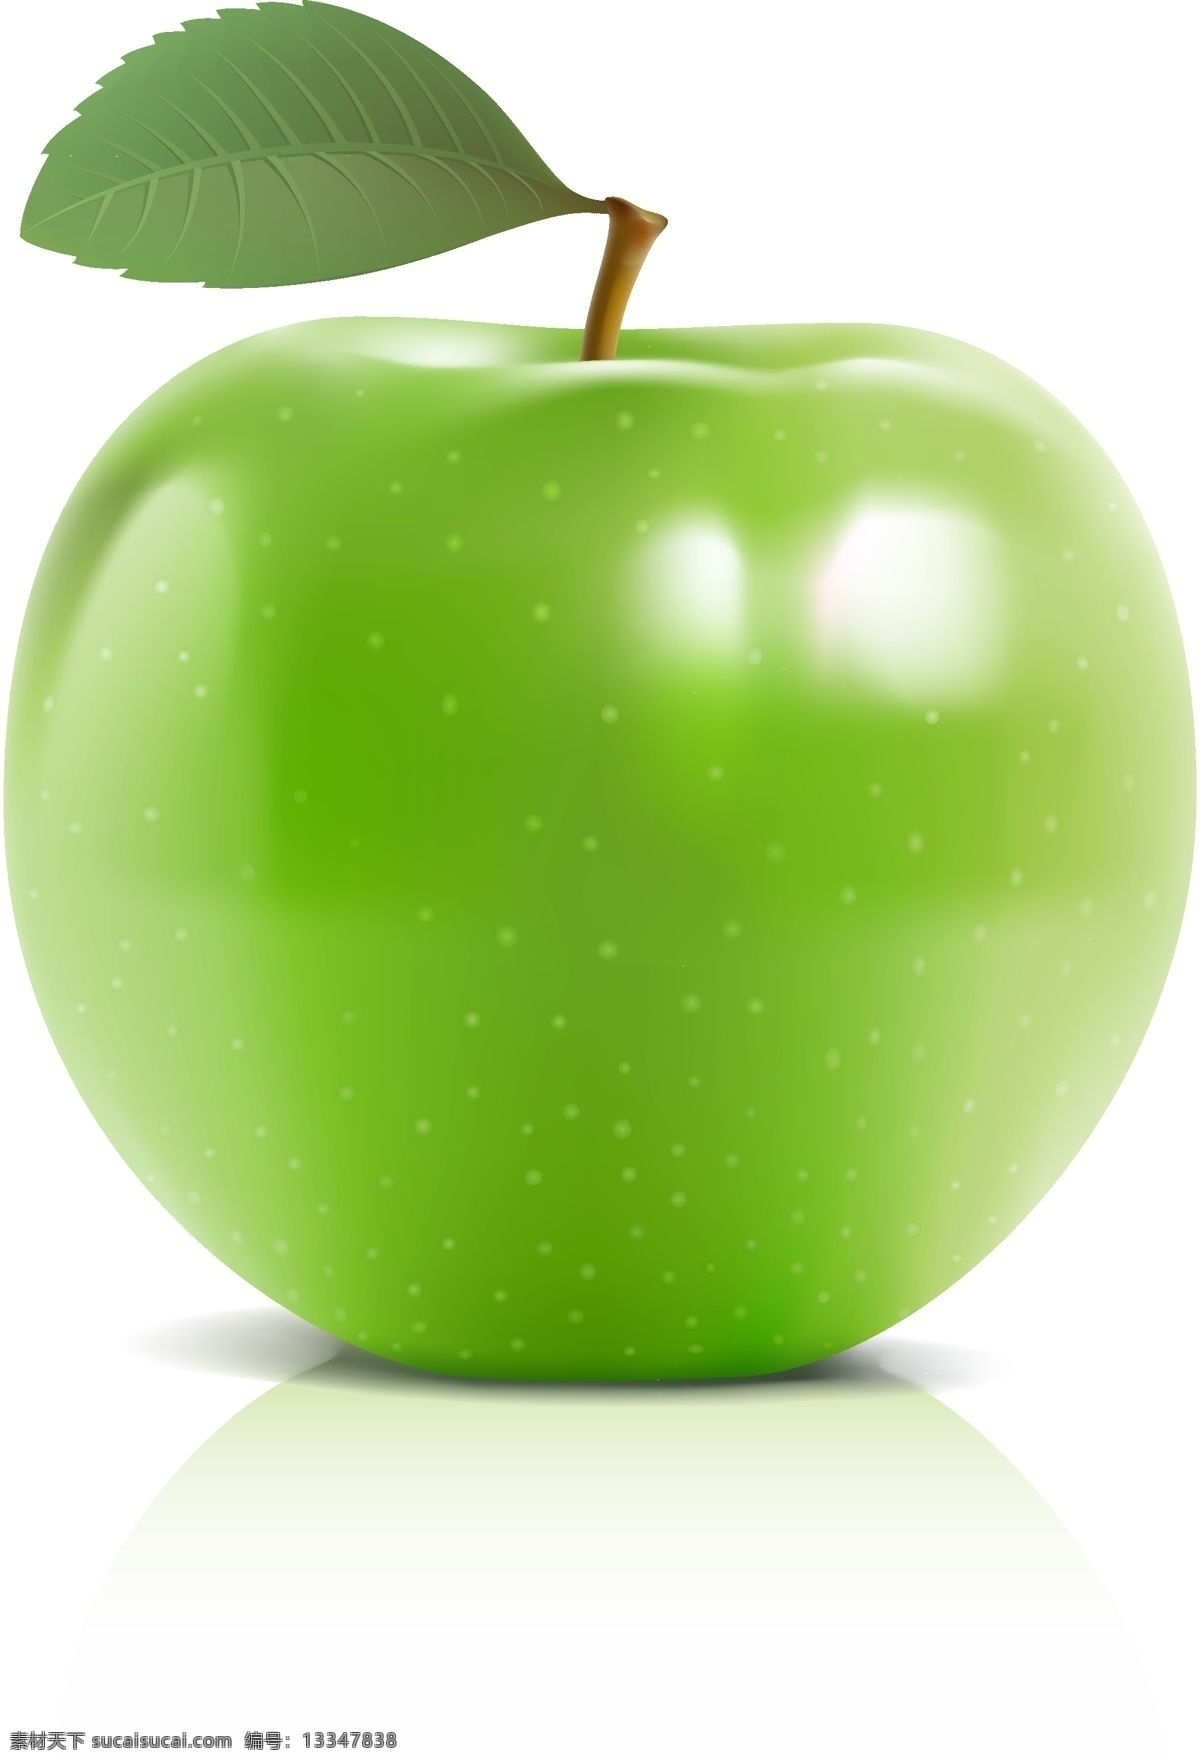 青苹果 矢量 矢量素材 苹果 矢量图 水果